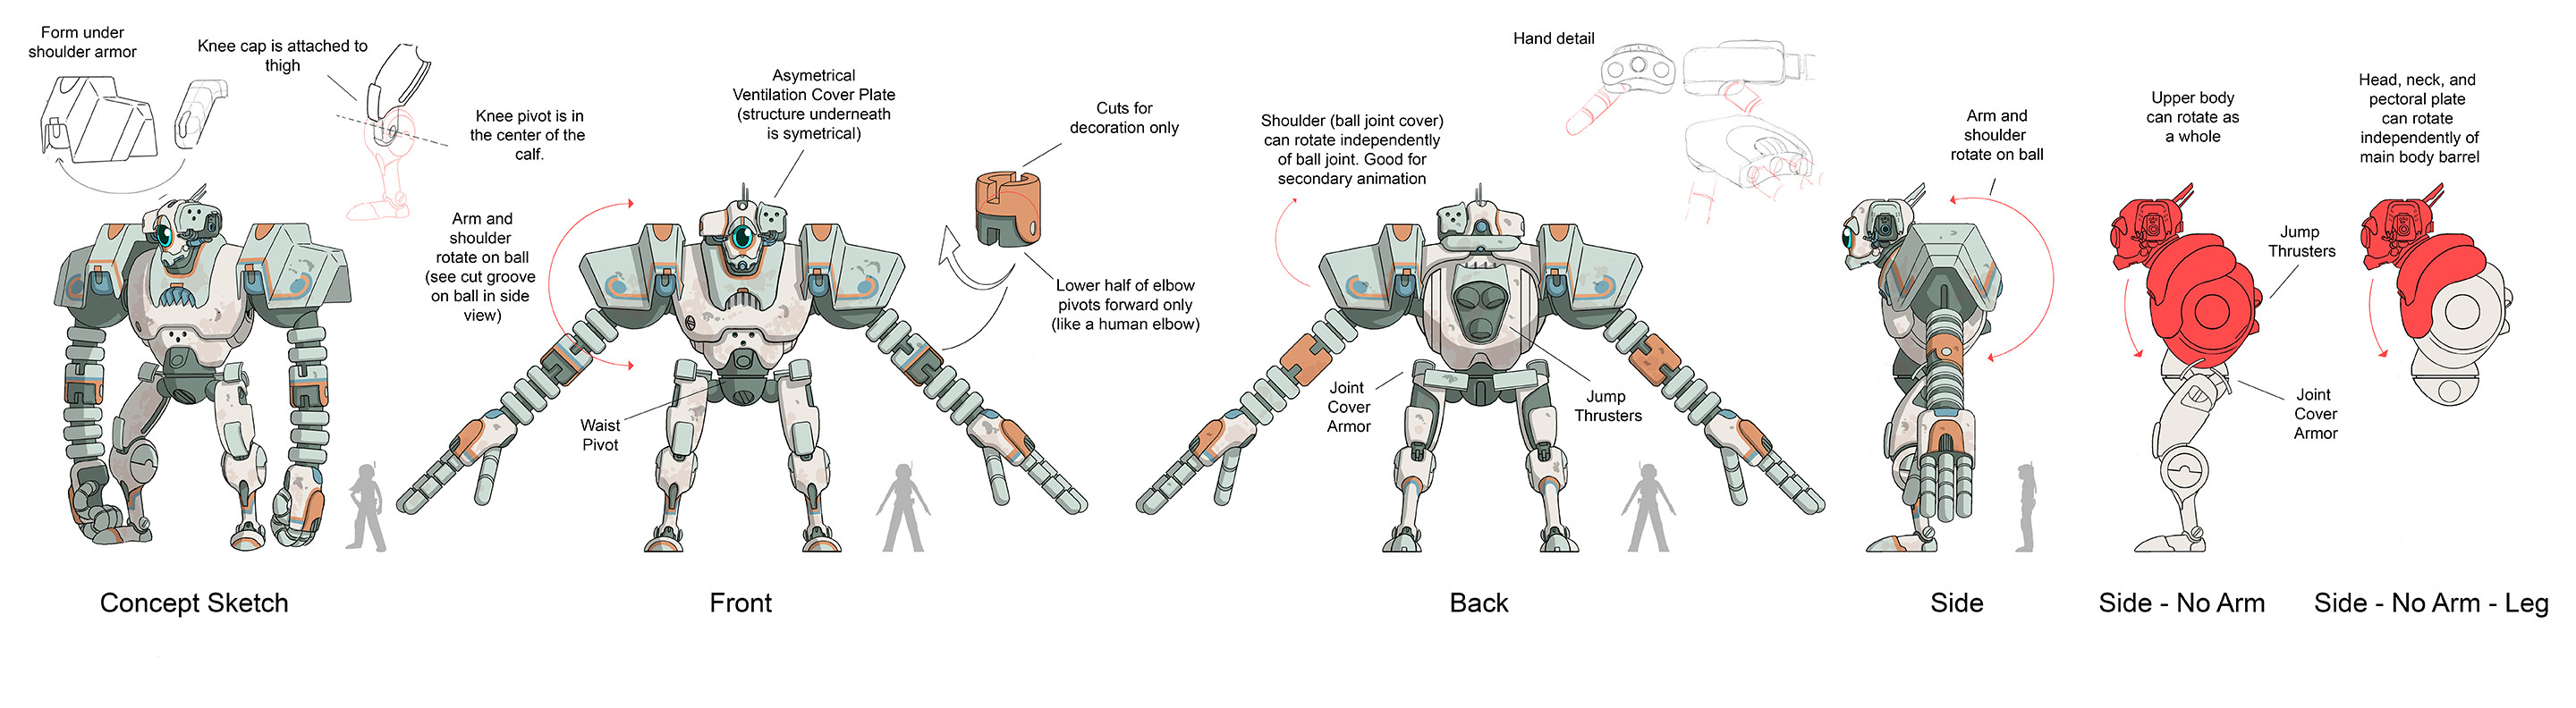 Hero Robot Design - Model Sheet